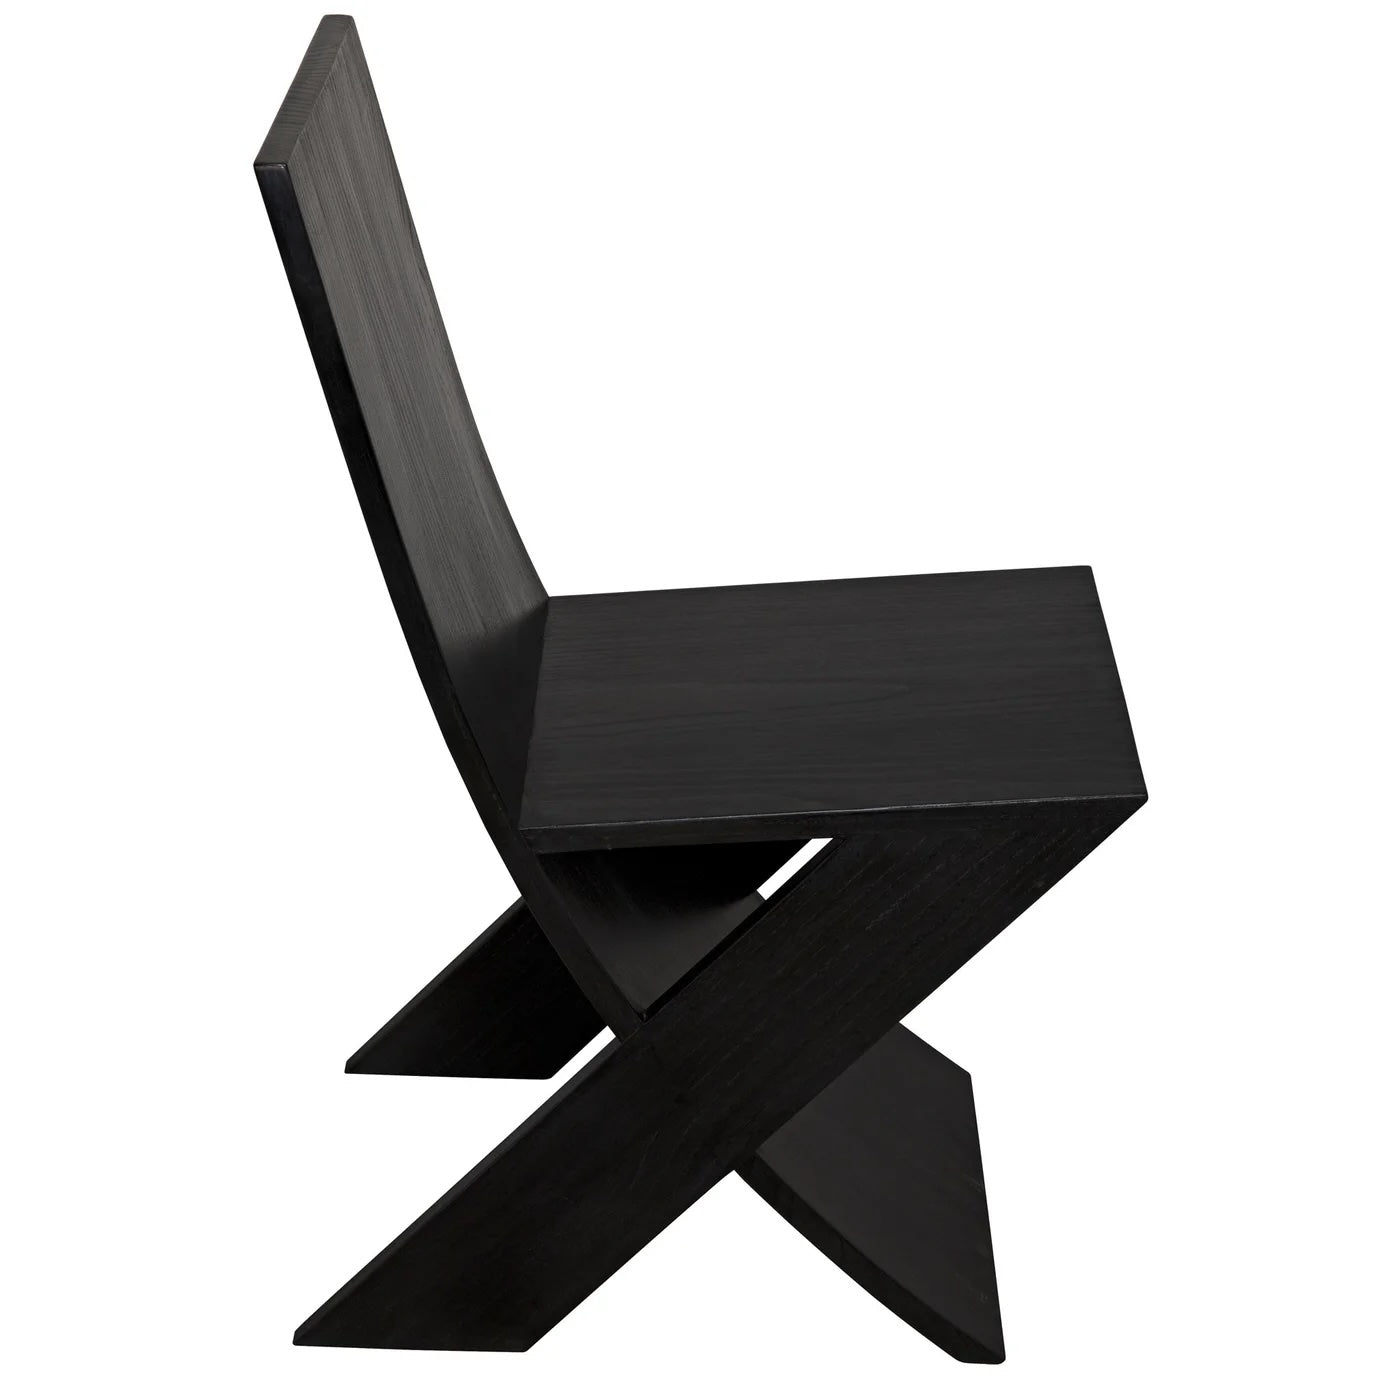 Tech Chair